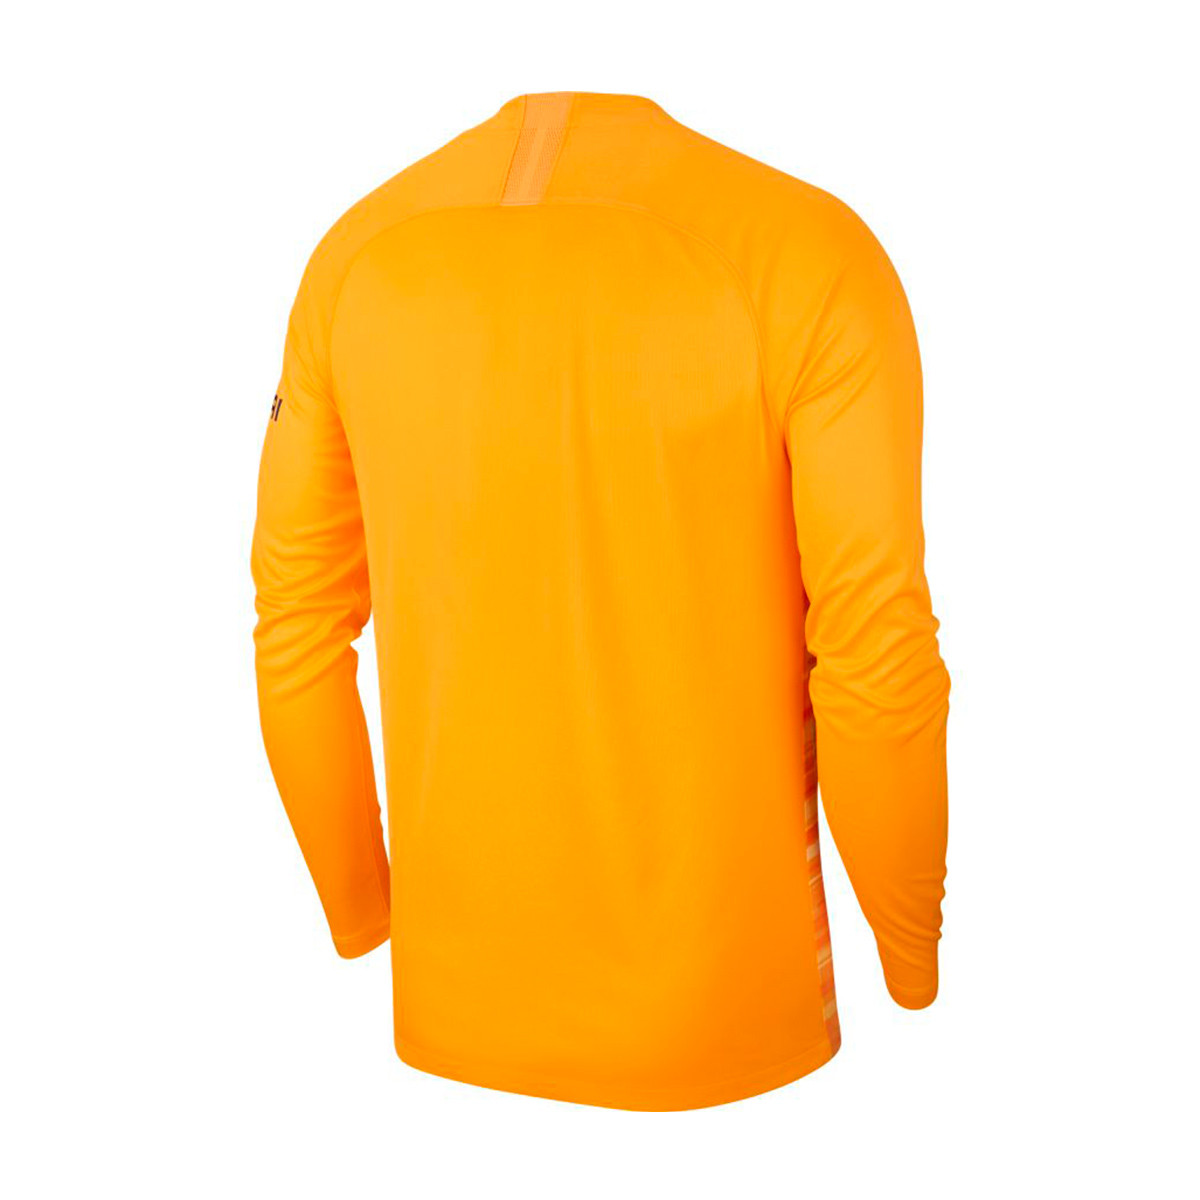 chelsea 2019 goalkeeper kit